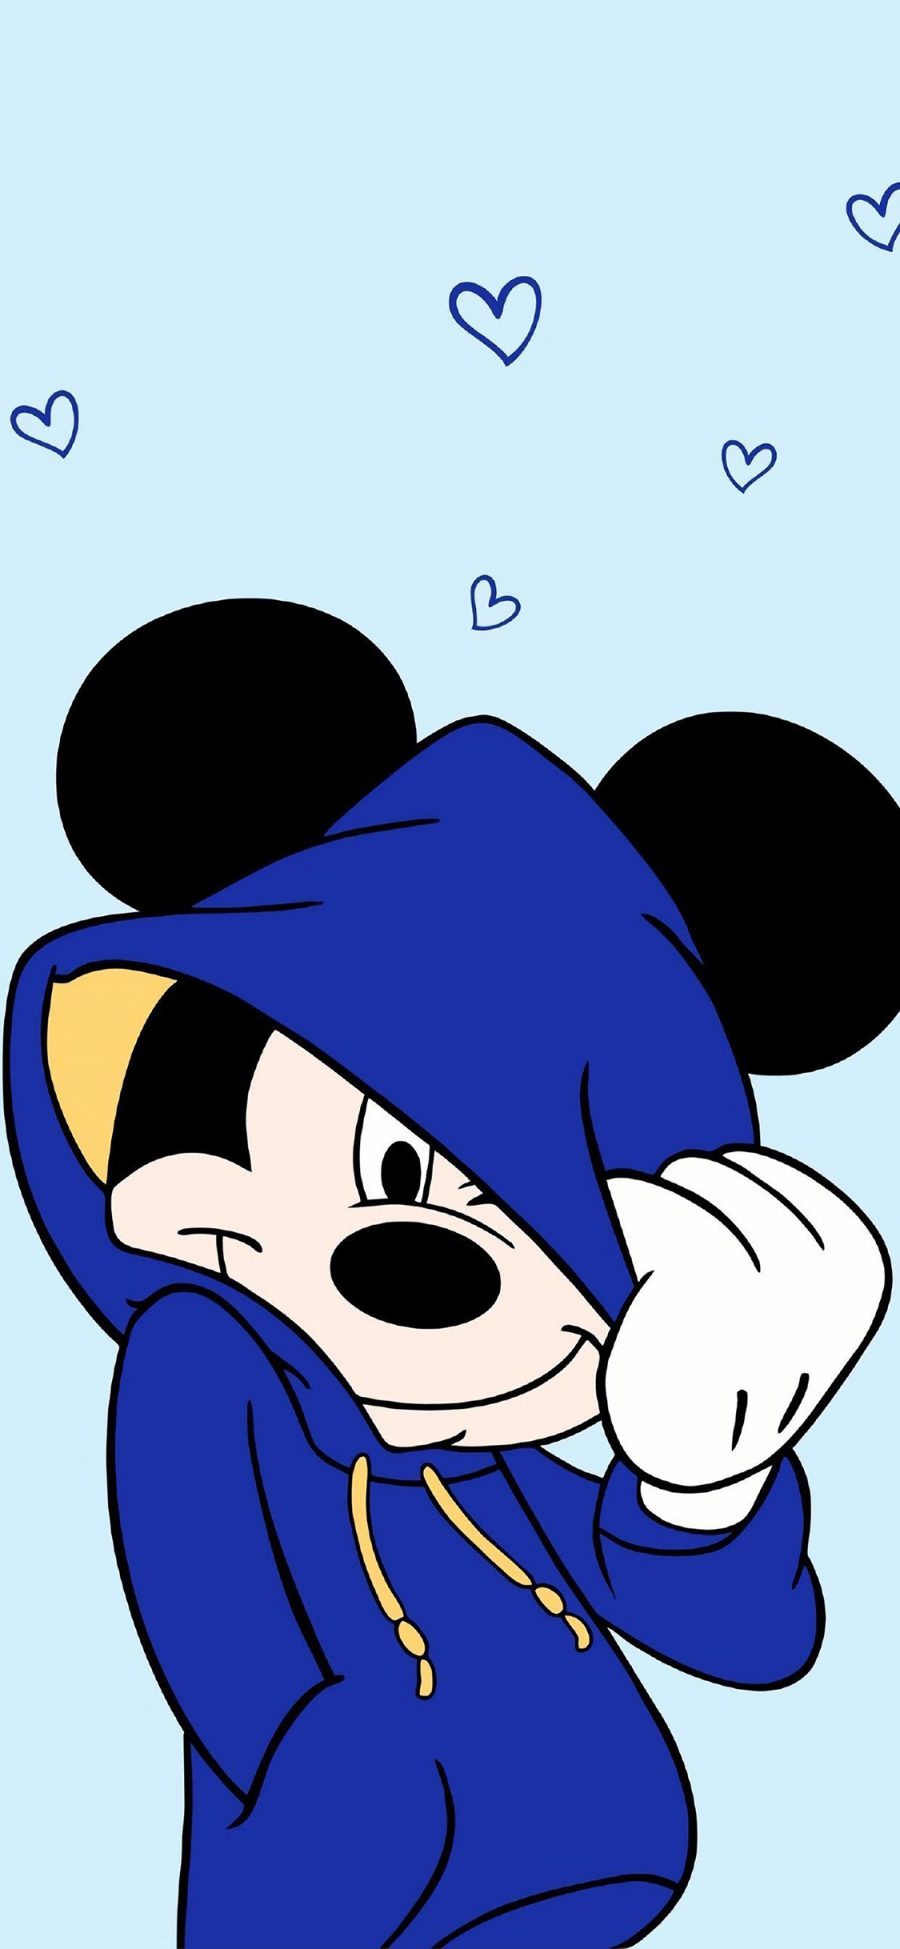 [2436×1125]米老鼠 蓝色 迪士尼 动画 米奇 苹果手机动漫壁纸图片